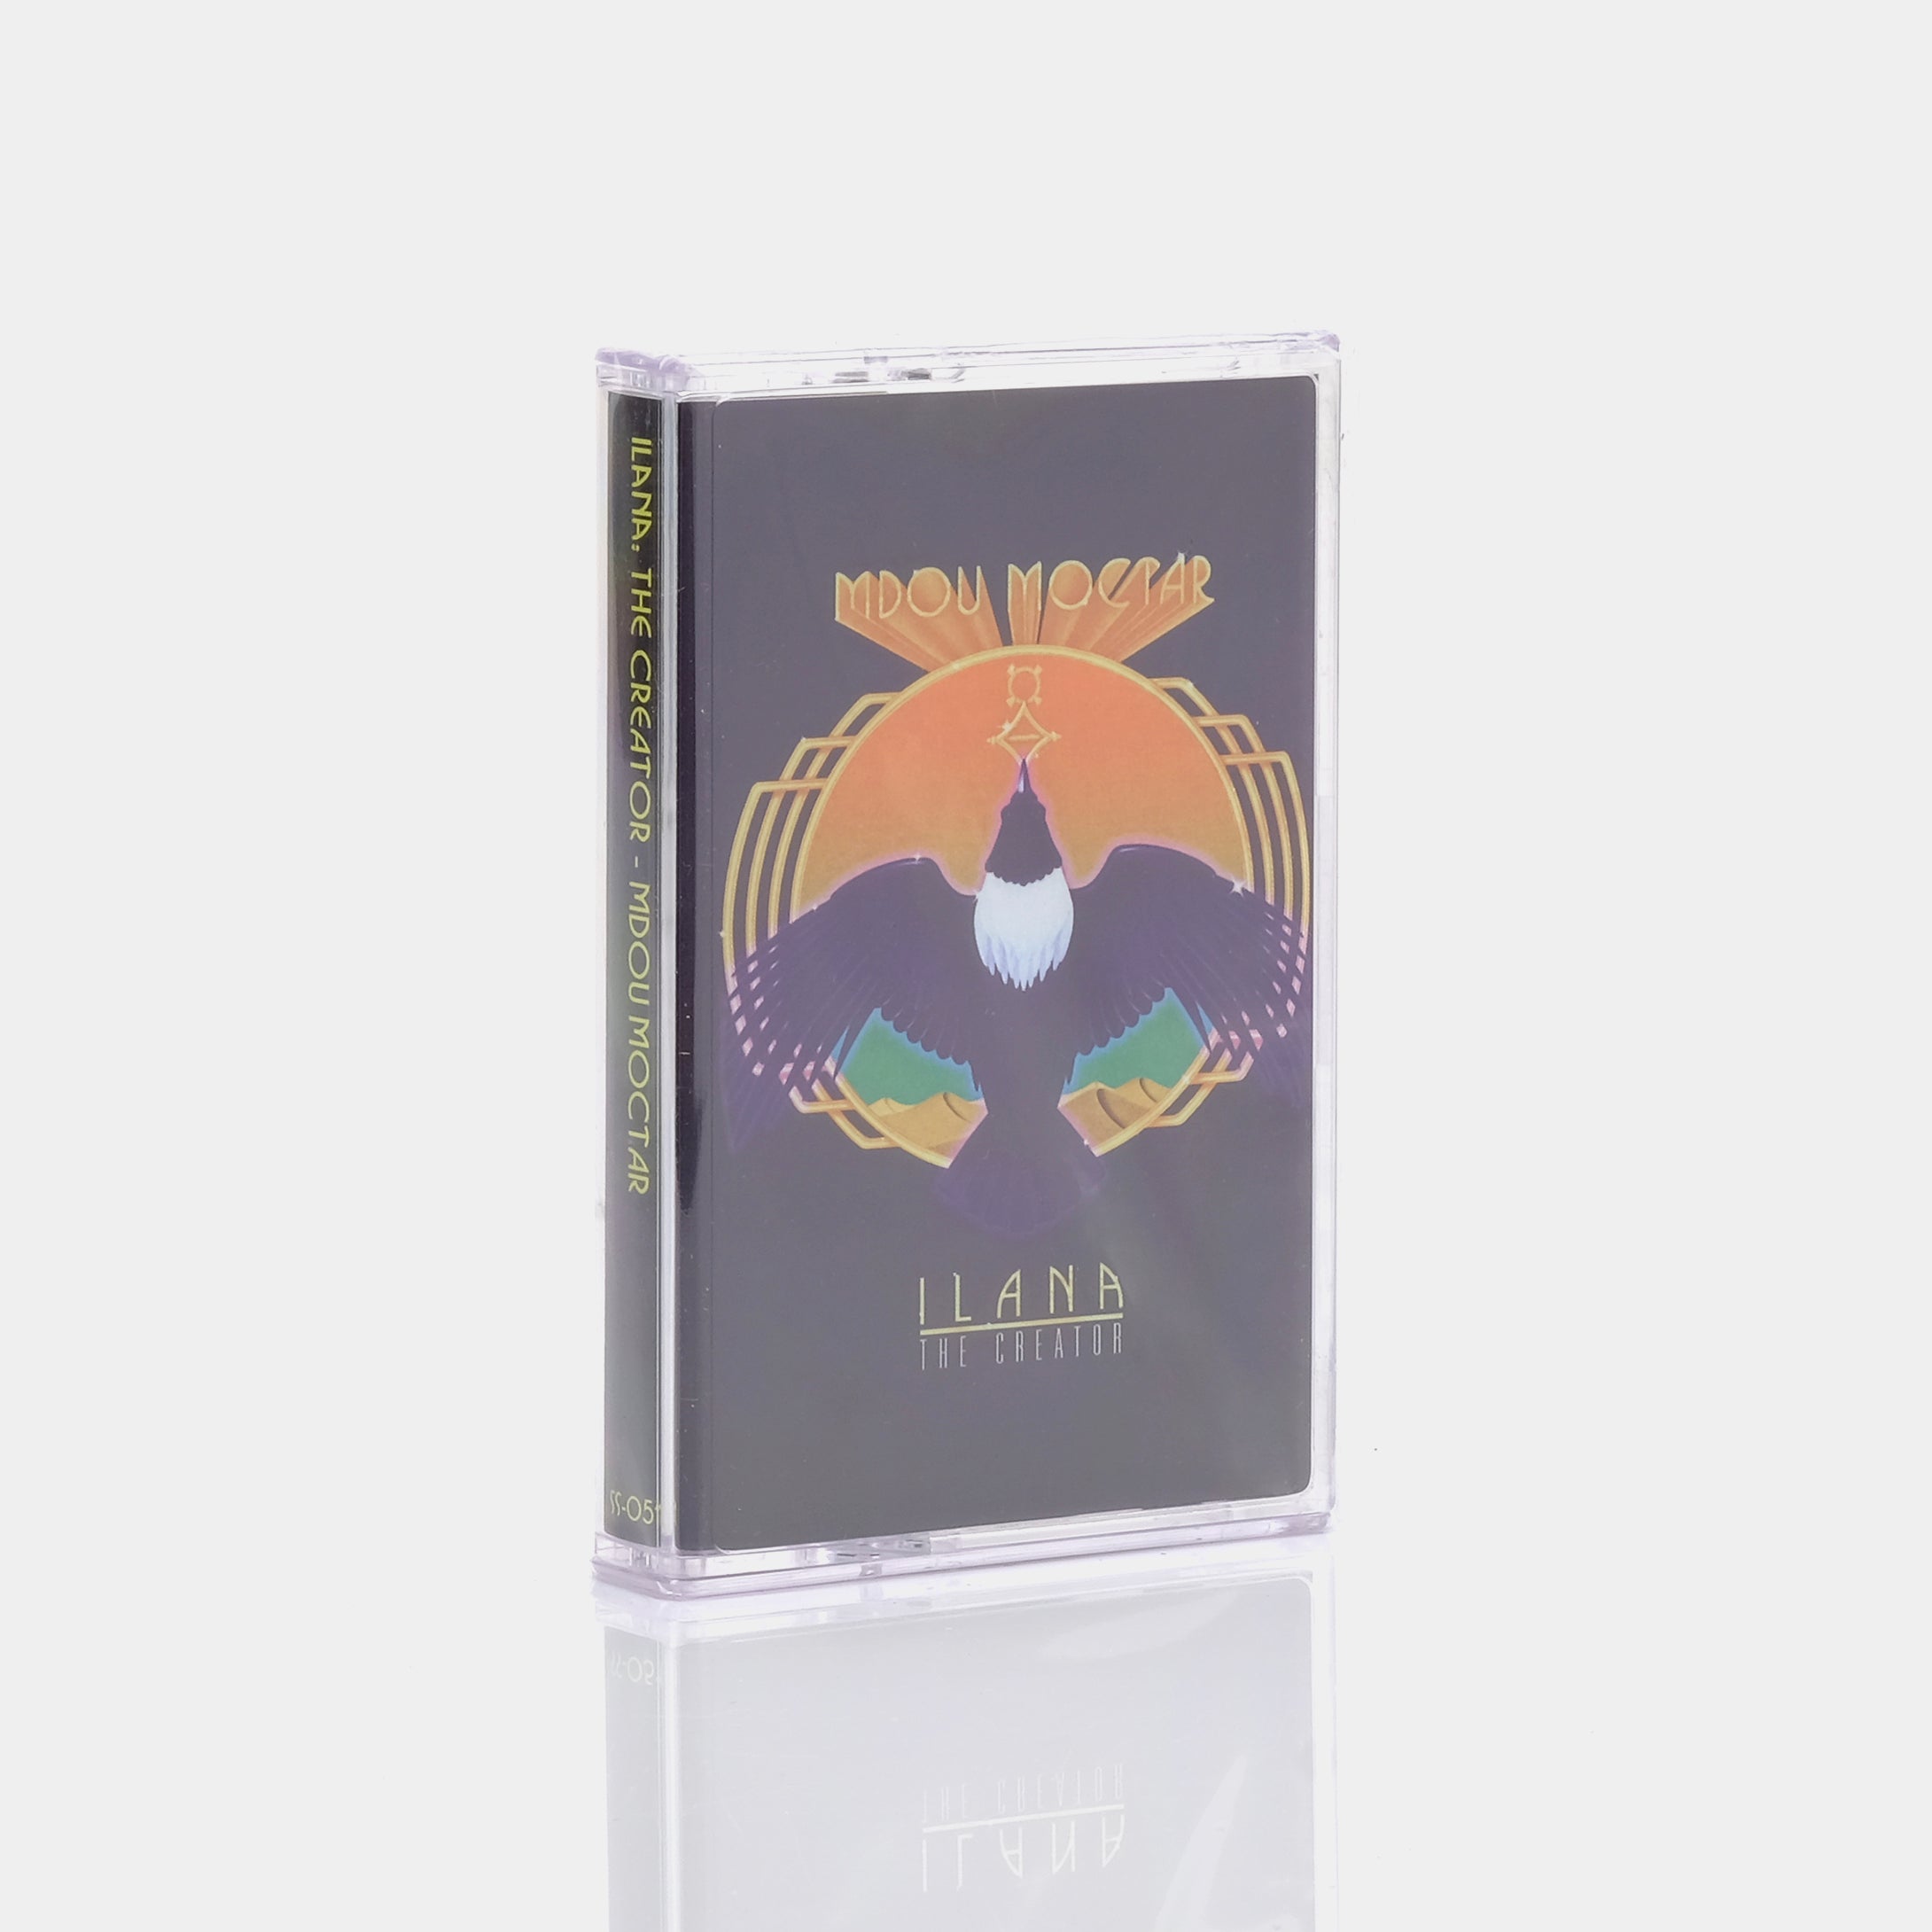 Mdou Moctar - Ilana (The Creator) Cassette Tape